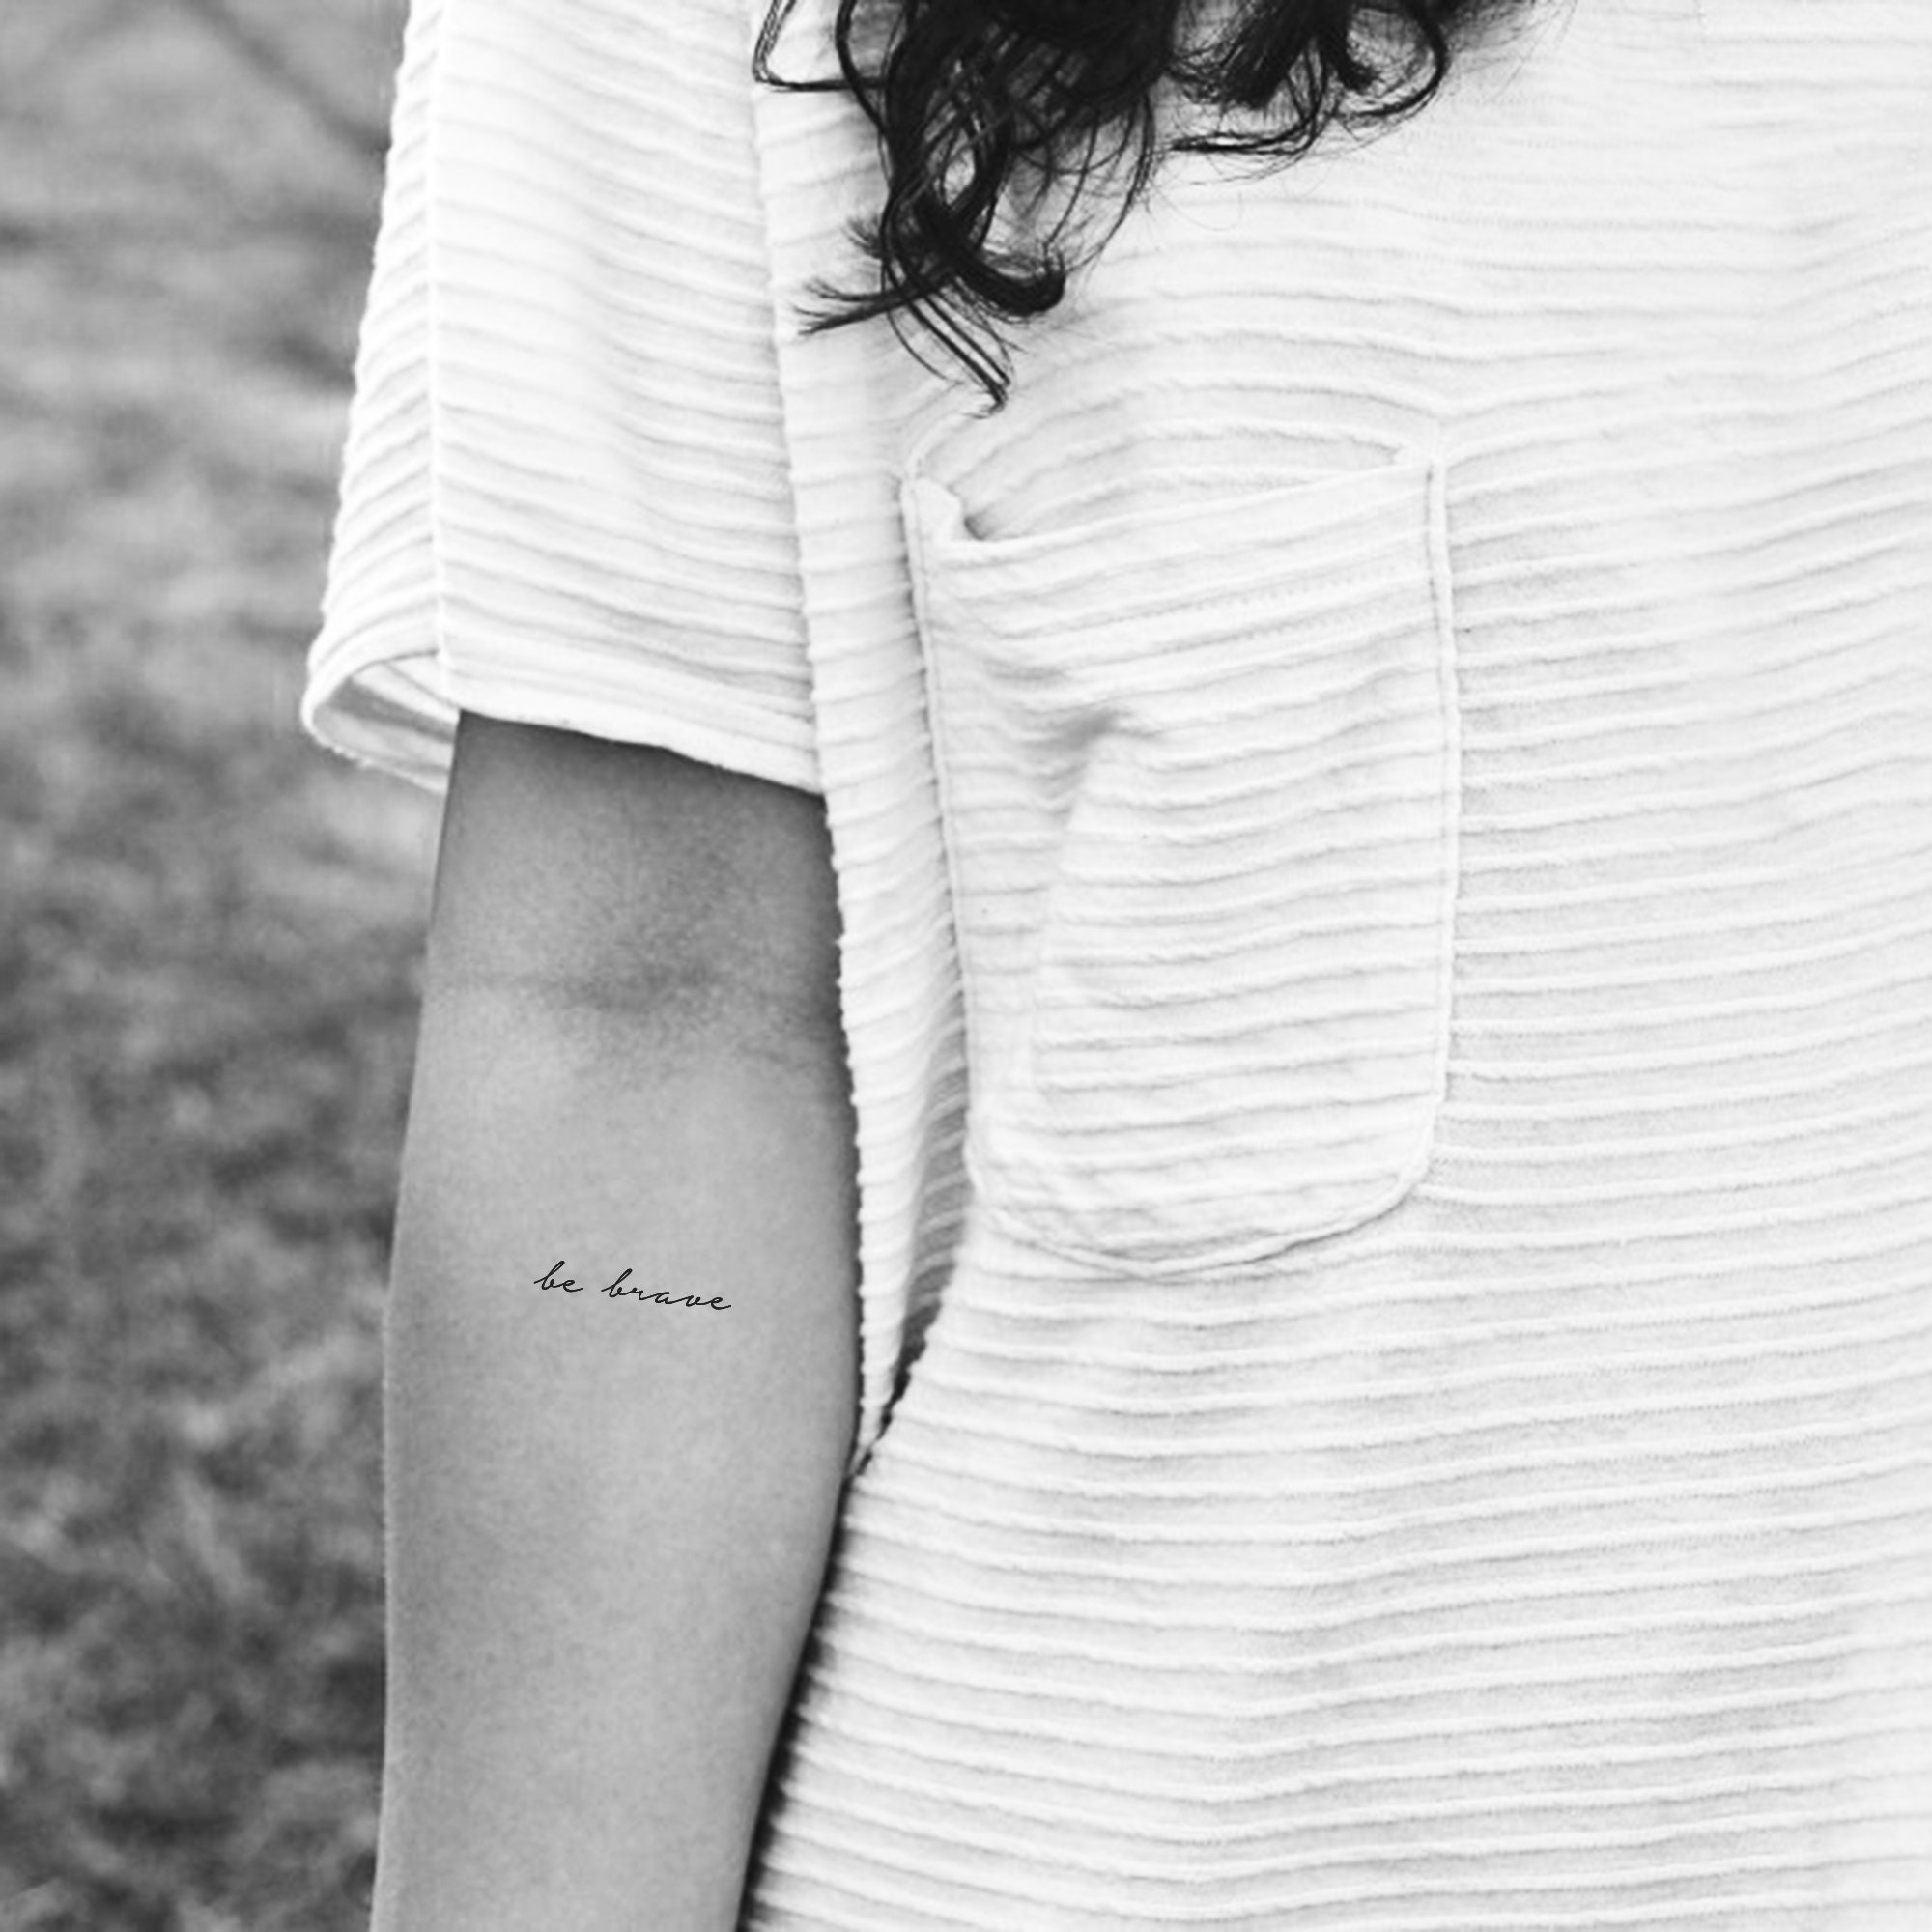 Be Brave Tattoo  Be brave tattoo Tattoos Small tattoos